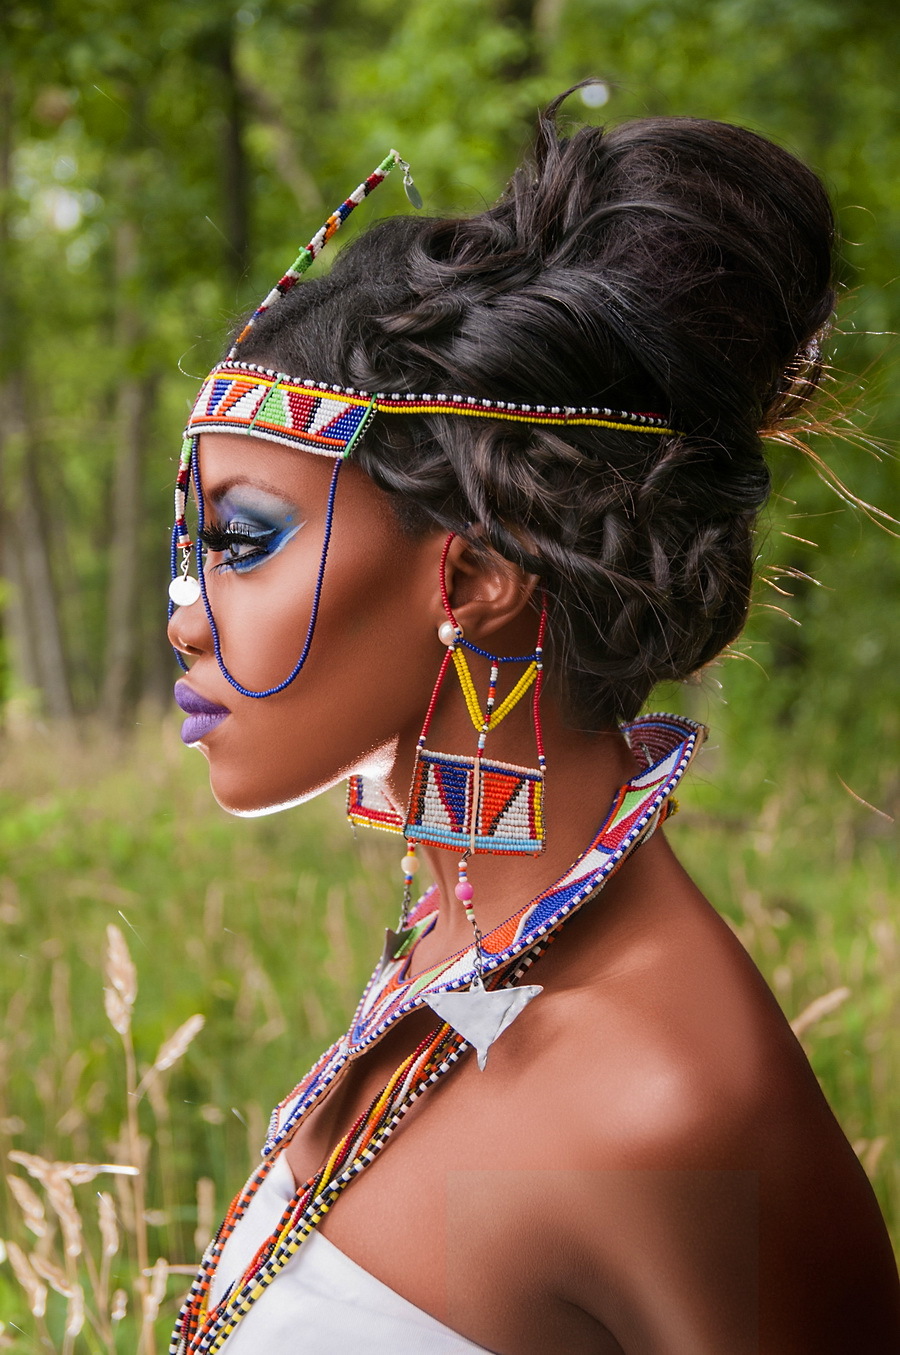 Соберите онлайн пазл №192301 «Африканские красавицы» из 330 элементов беспл...